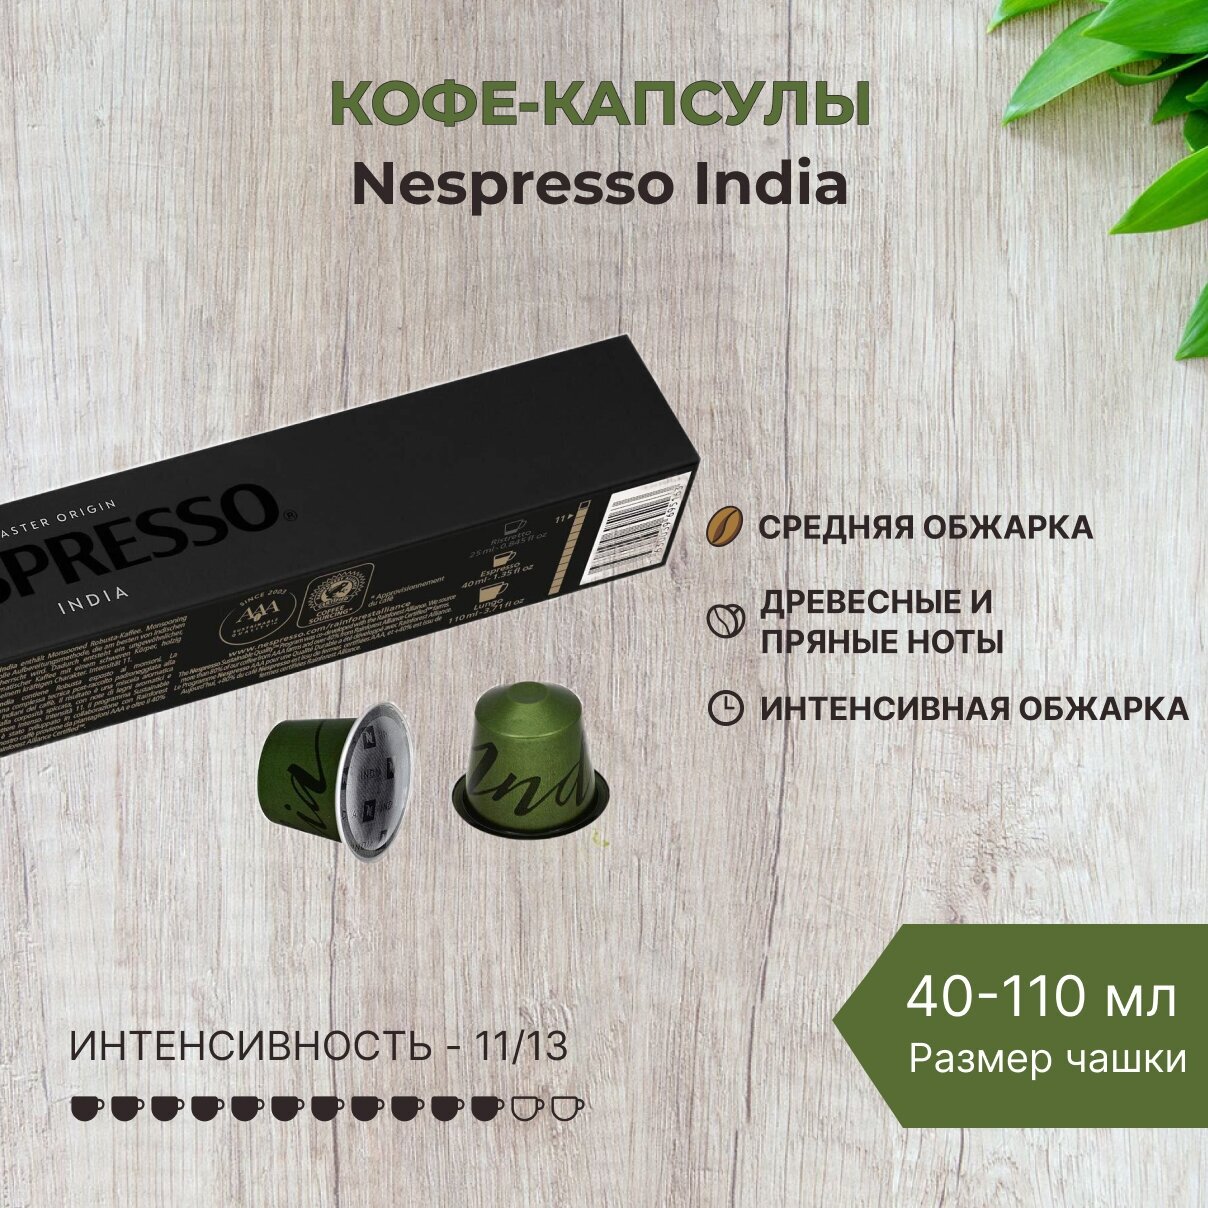 Кофе в капсулах Nespresso India 40-110 мл. 11/13 одна упаковка капсул Неспрессо Original (10 шт)